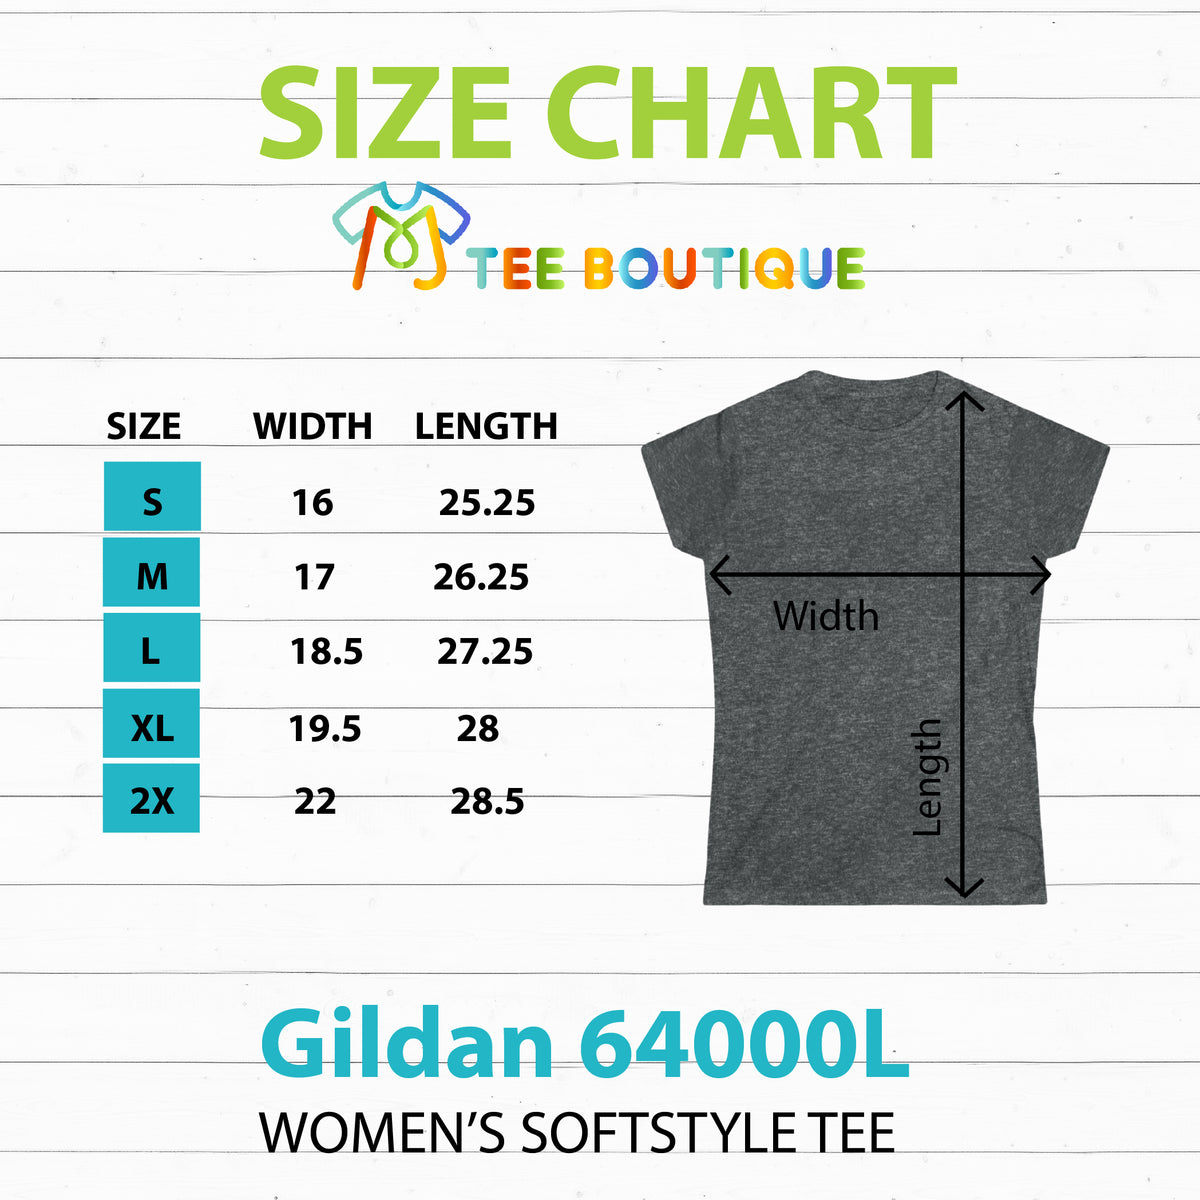 Chai High Chai Tea Shirt | Chai Tea Lover Shirt |  Tea Lover Gift | Women's Slim-fit Soft Style T-shirt